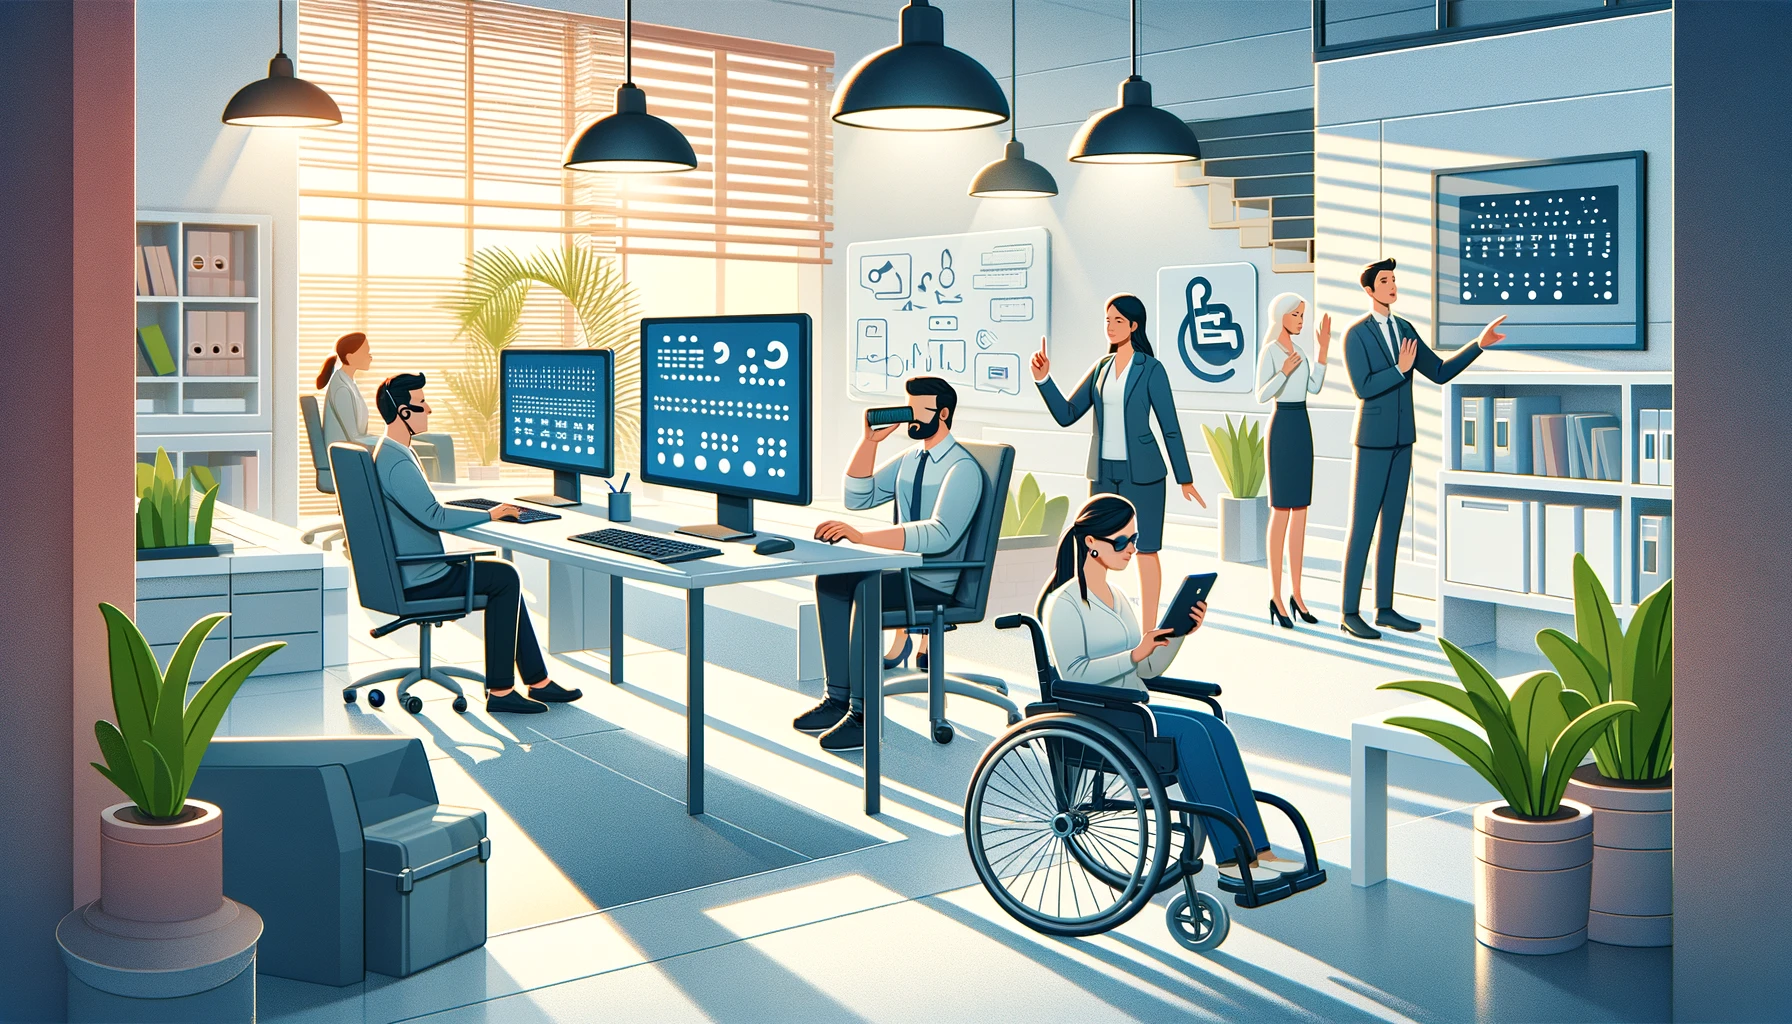 un grupo humano en la oficina trabajando, en el se ven personas con discapacidad visual y de movilidad